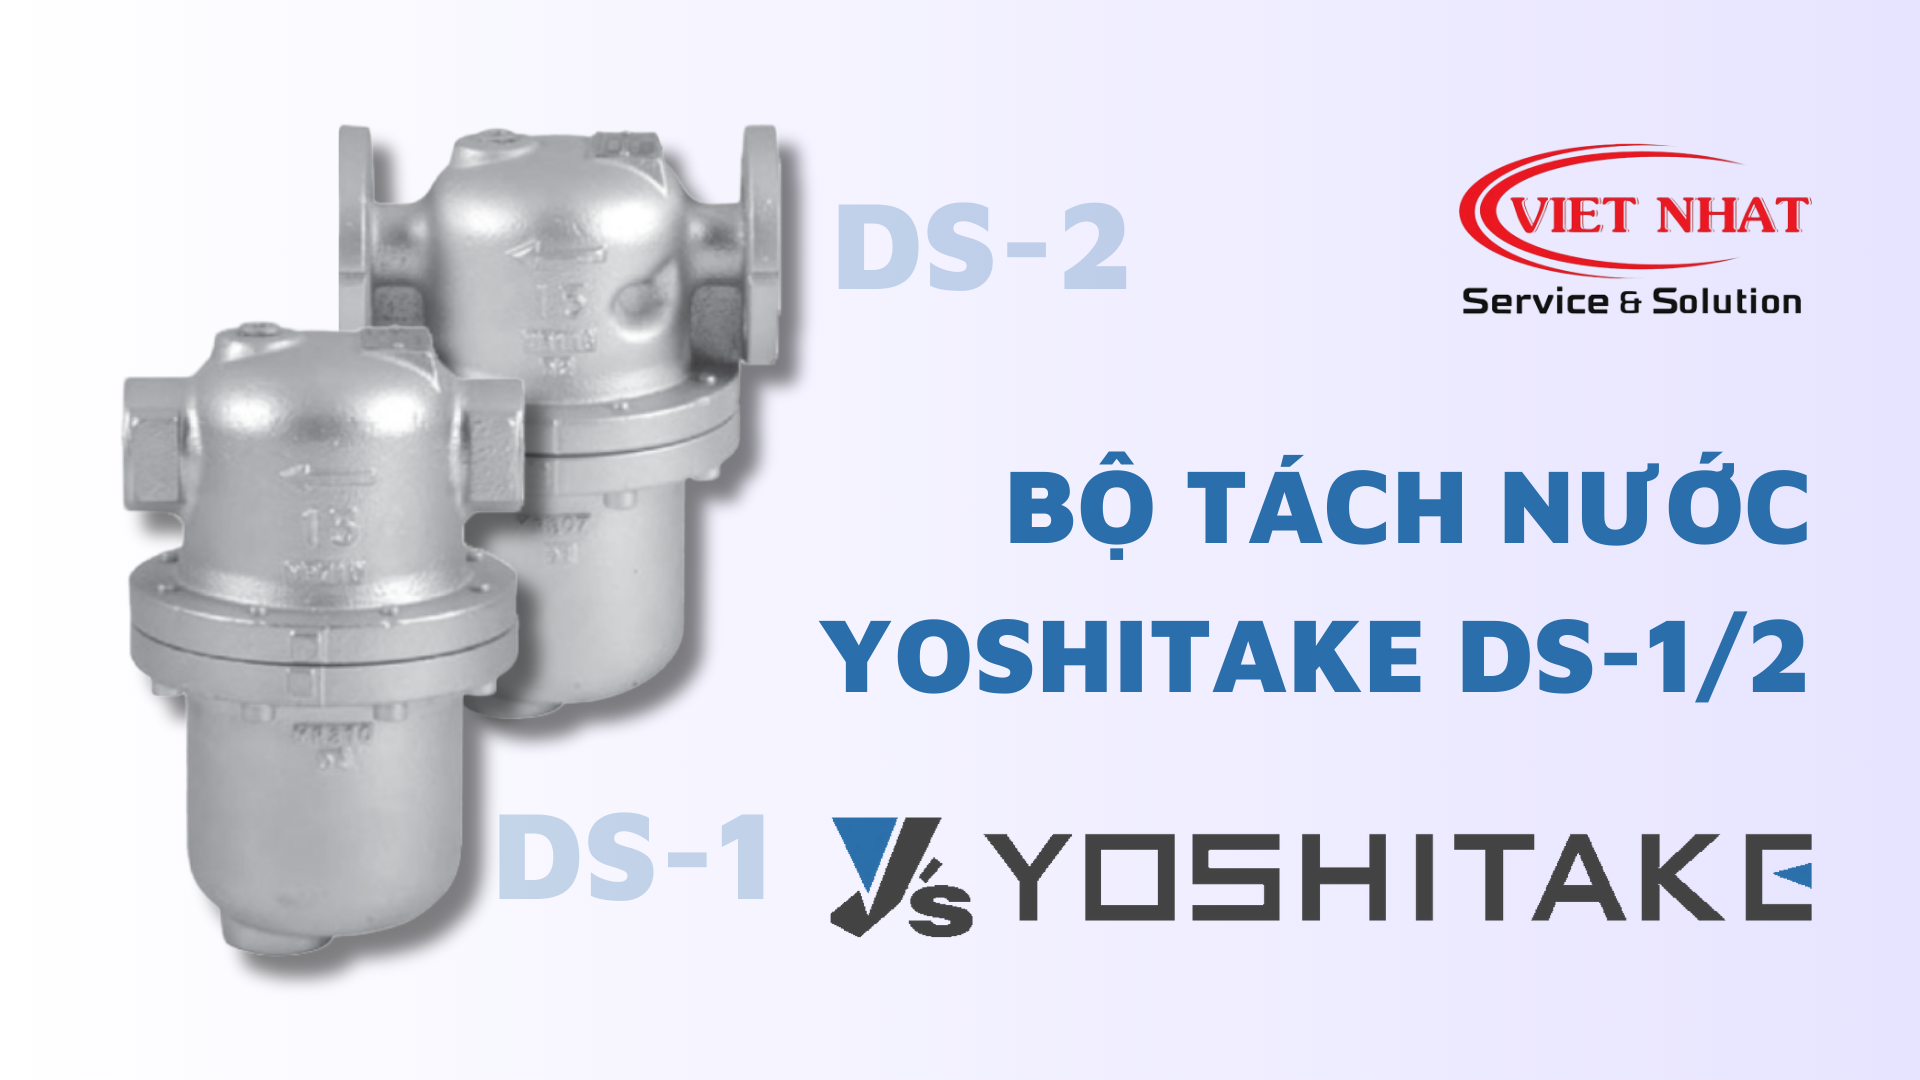 Bộ tách nước DS-1, DS-2